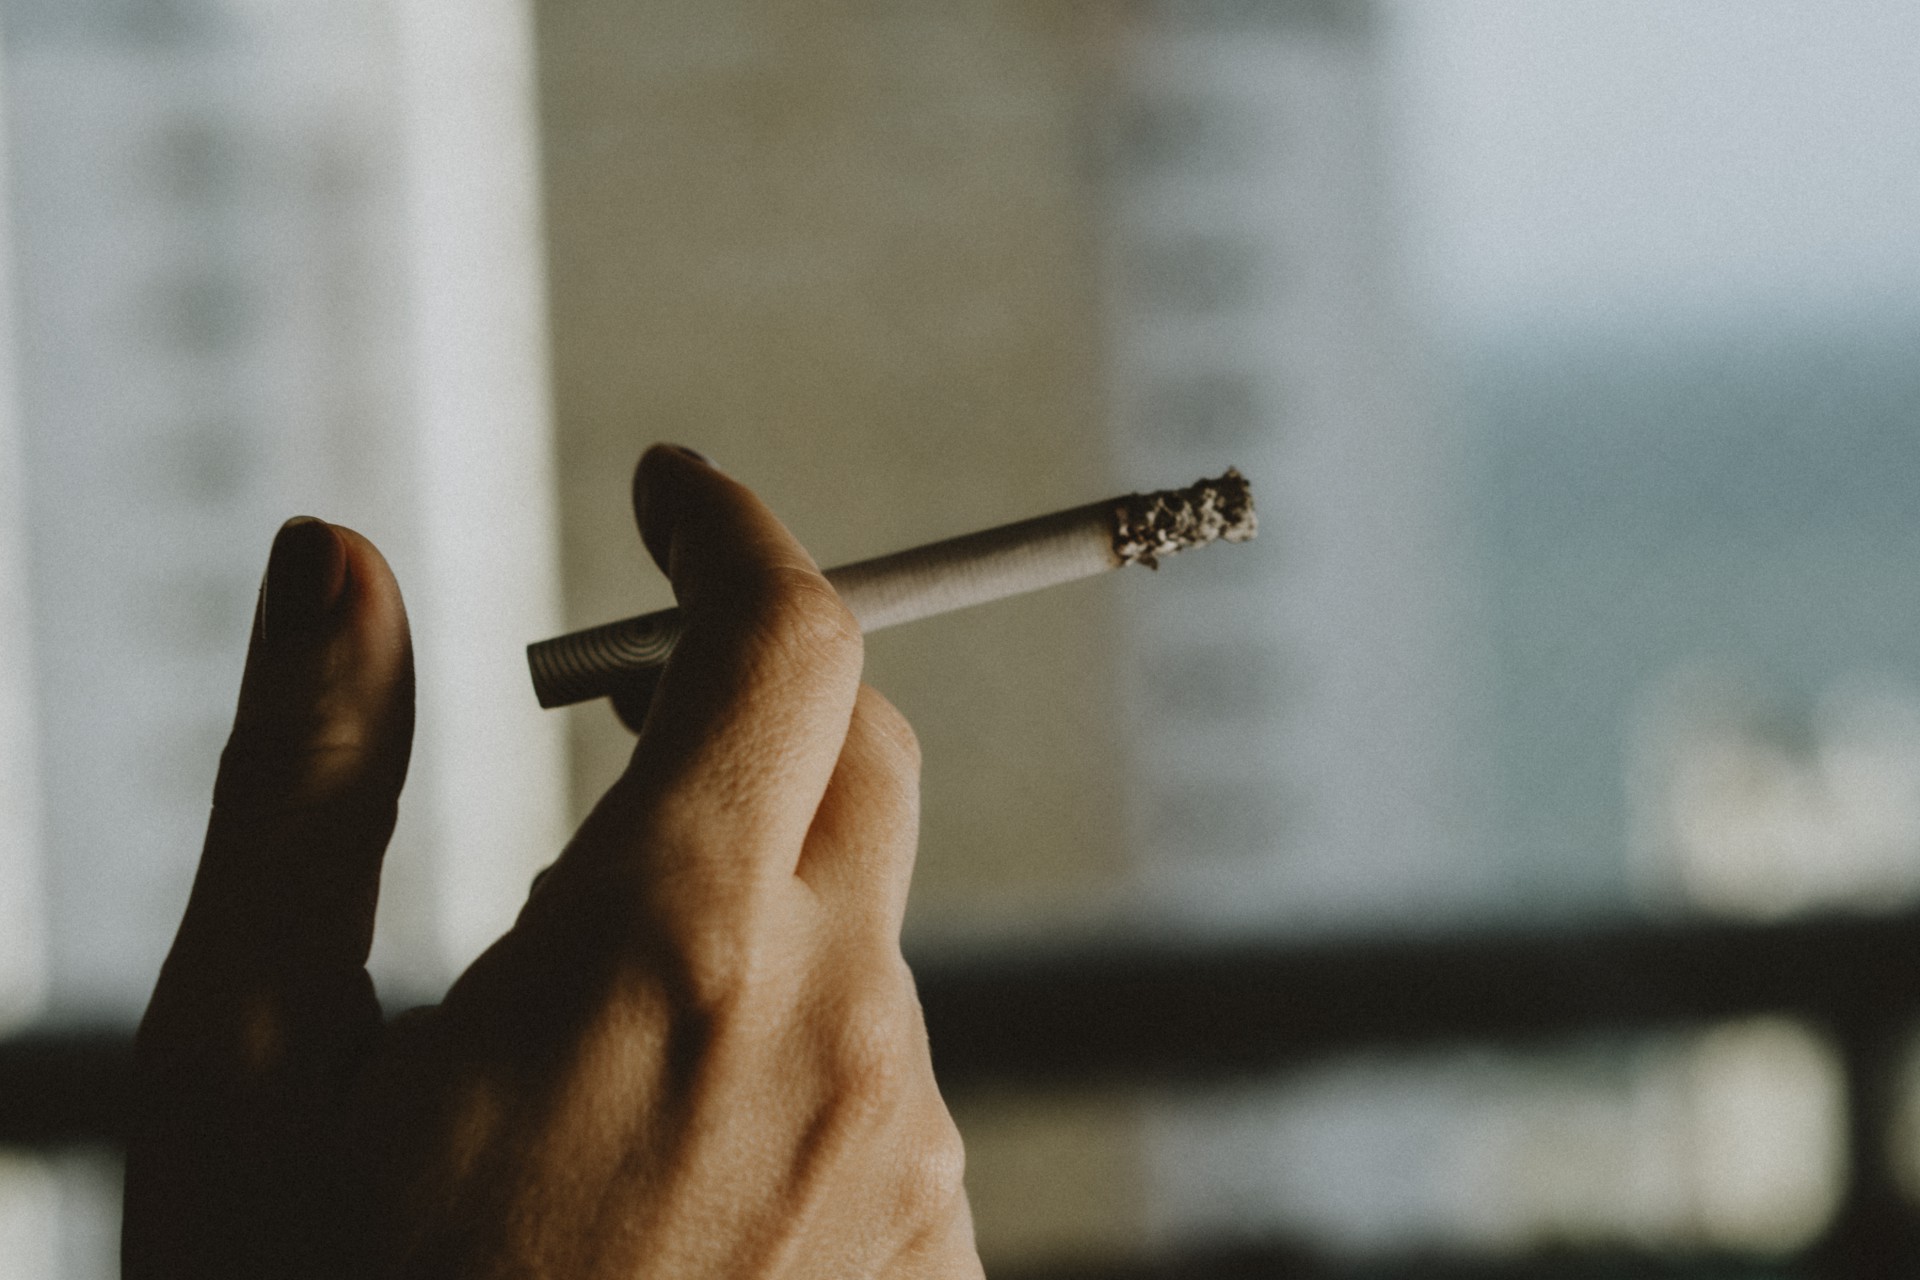 FORTALEZA - CE, BRASIL, 22-09-2020: Pessoa fumando com cigarro na mão. Aumento do uso de drogas ilícitas e lícitas durante a pandemia. Ciência e Saúde.  (Foto: Júlio Caesar / O Povo)(Foto: JÚLIO CAESAR)